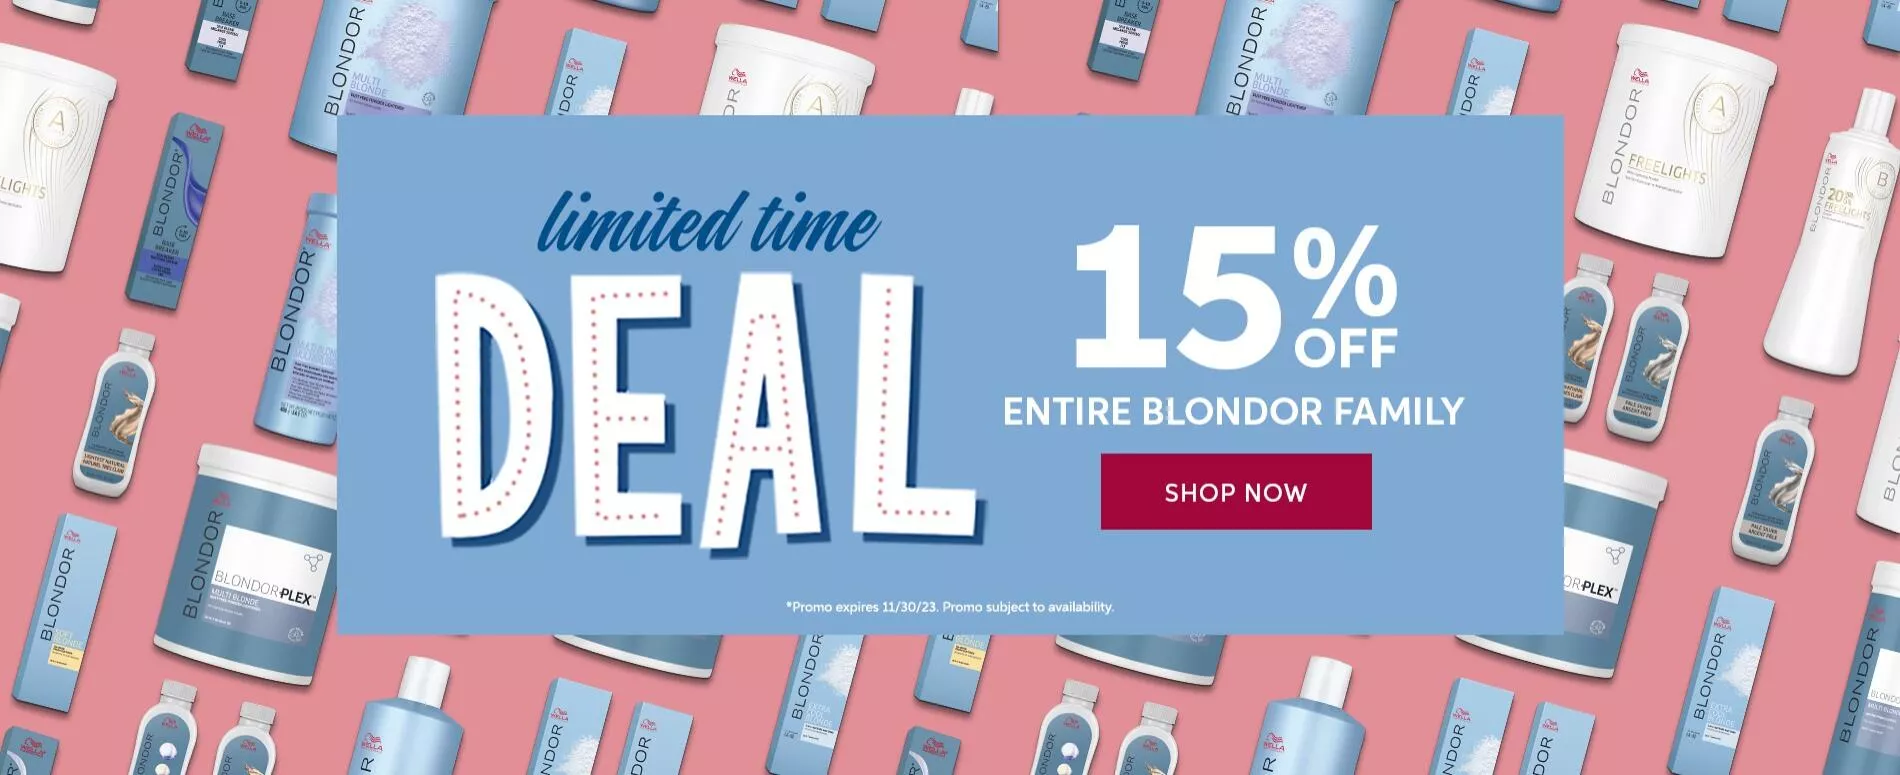 Blondor 15% off promo